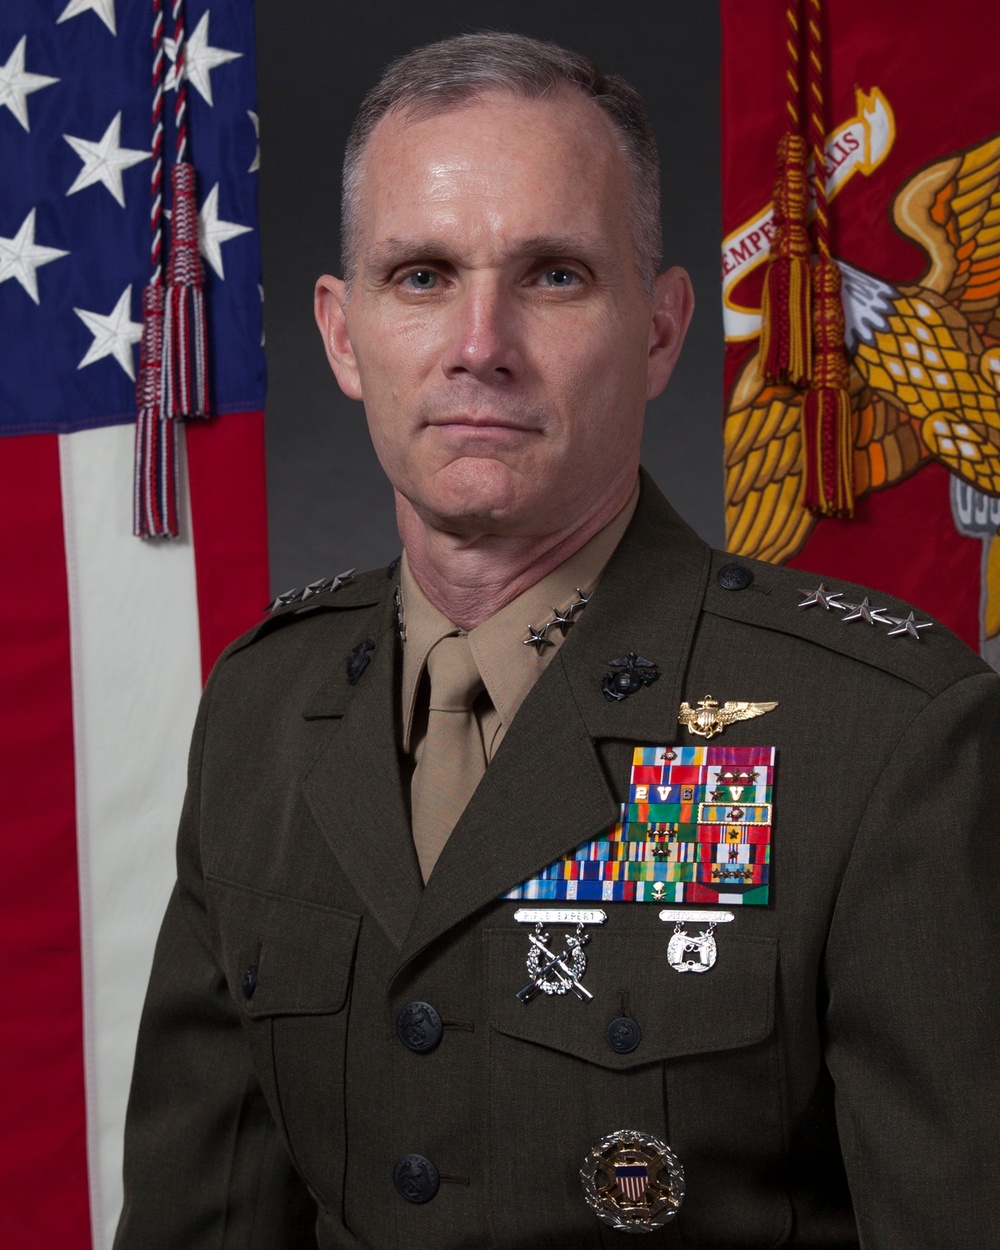 Lt. Gen. Gary L. Thomas Command Portrait